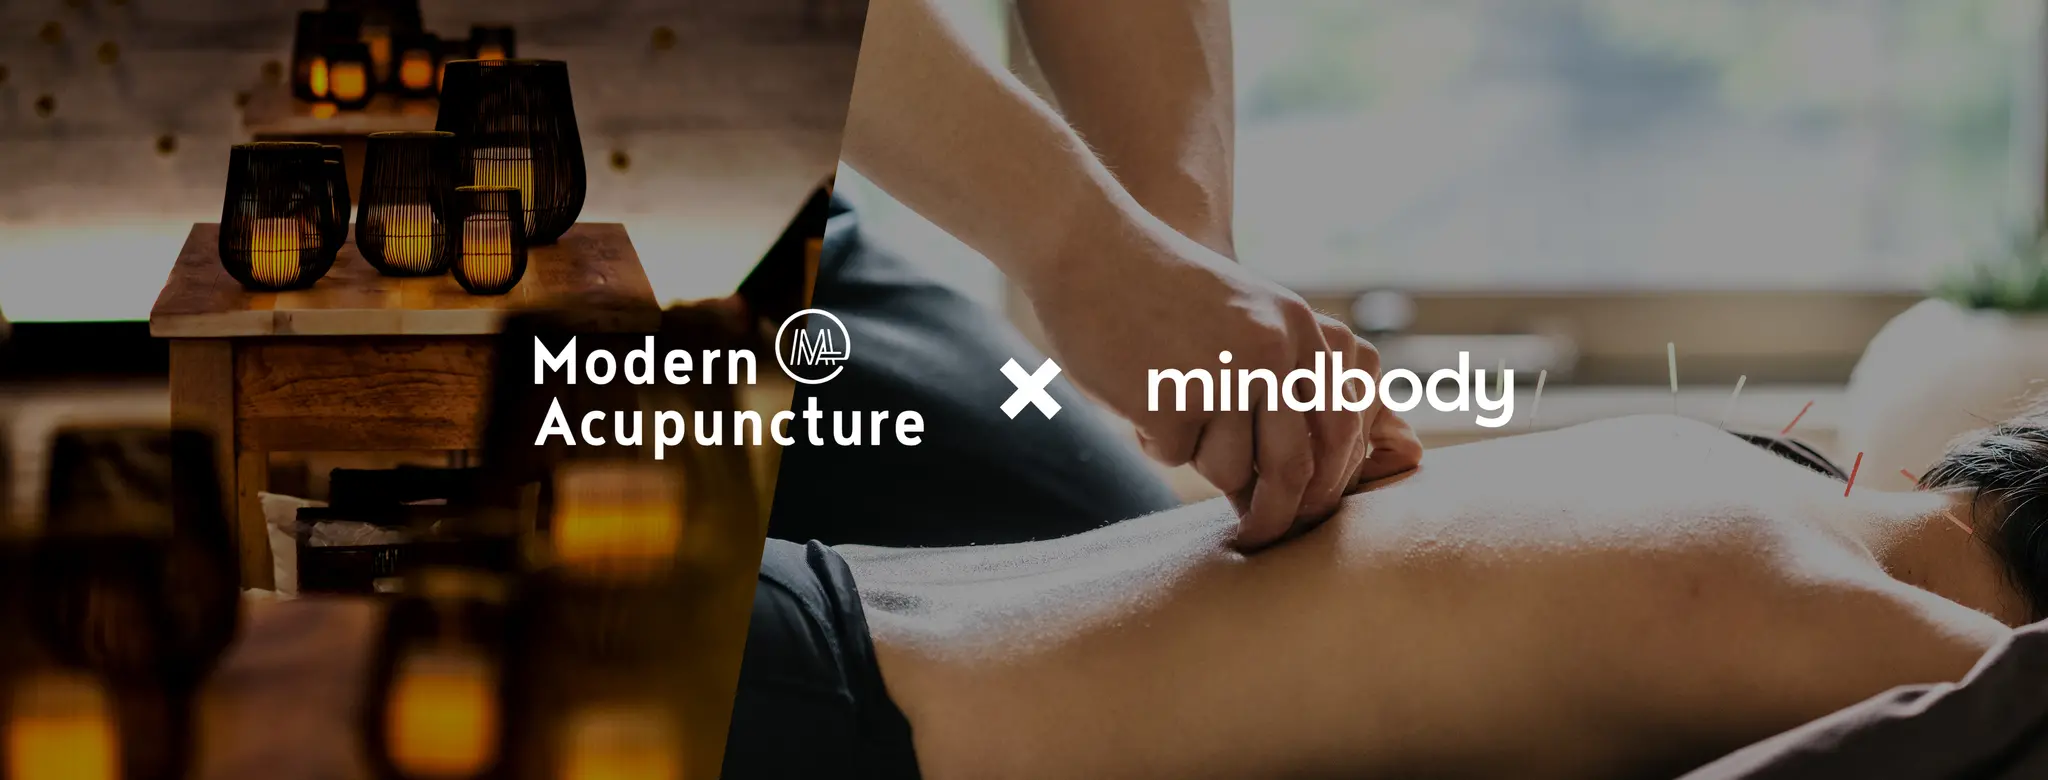 Modern Acupuncture x Mindbody 